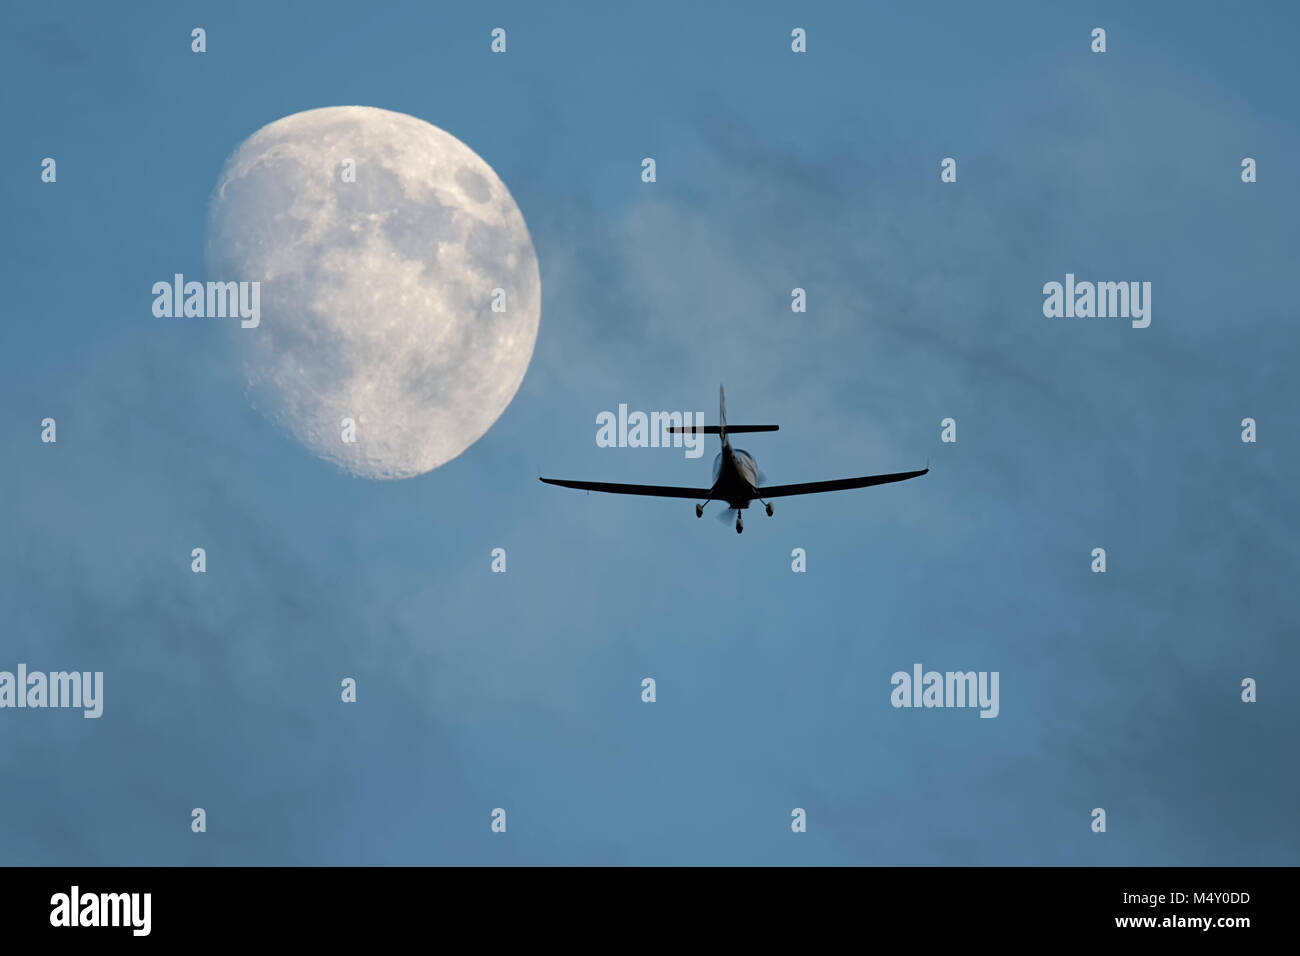 Vol d'avion léger vers la lune Banque D'Images